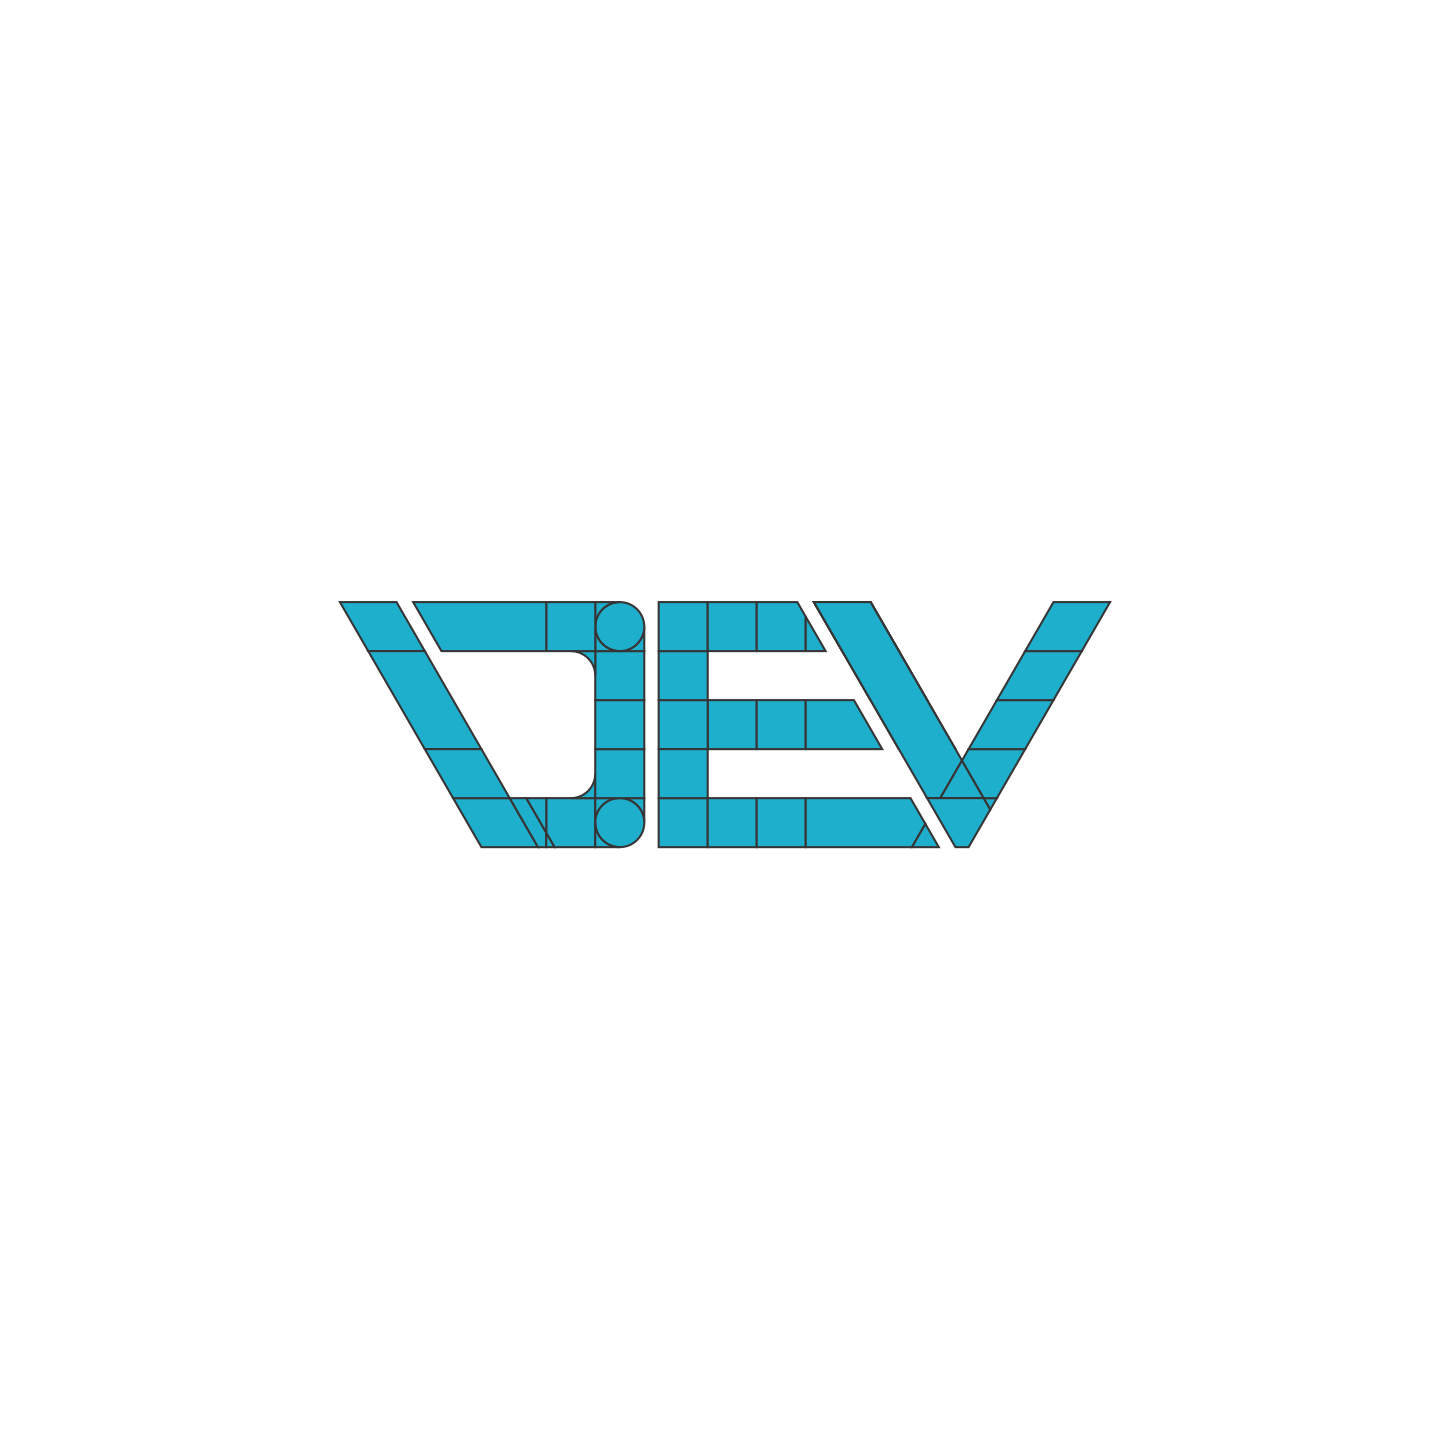 Dev Studio logo Black by ShivaSv on DeviantArt